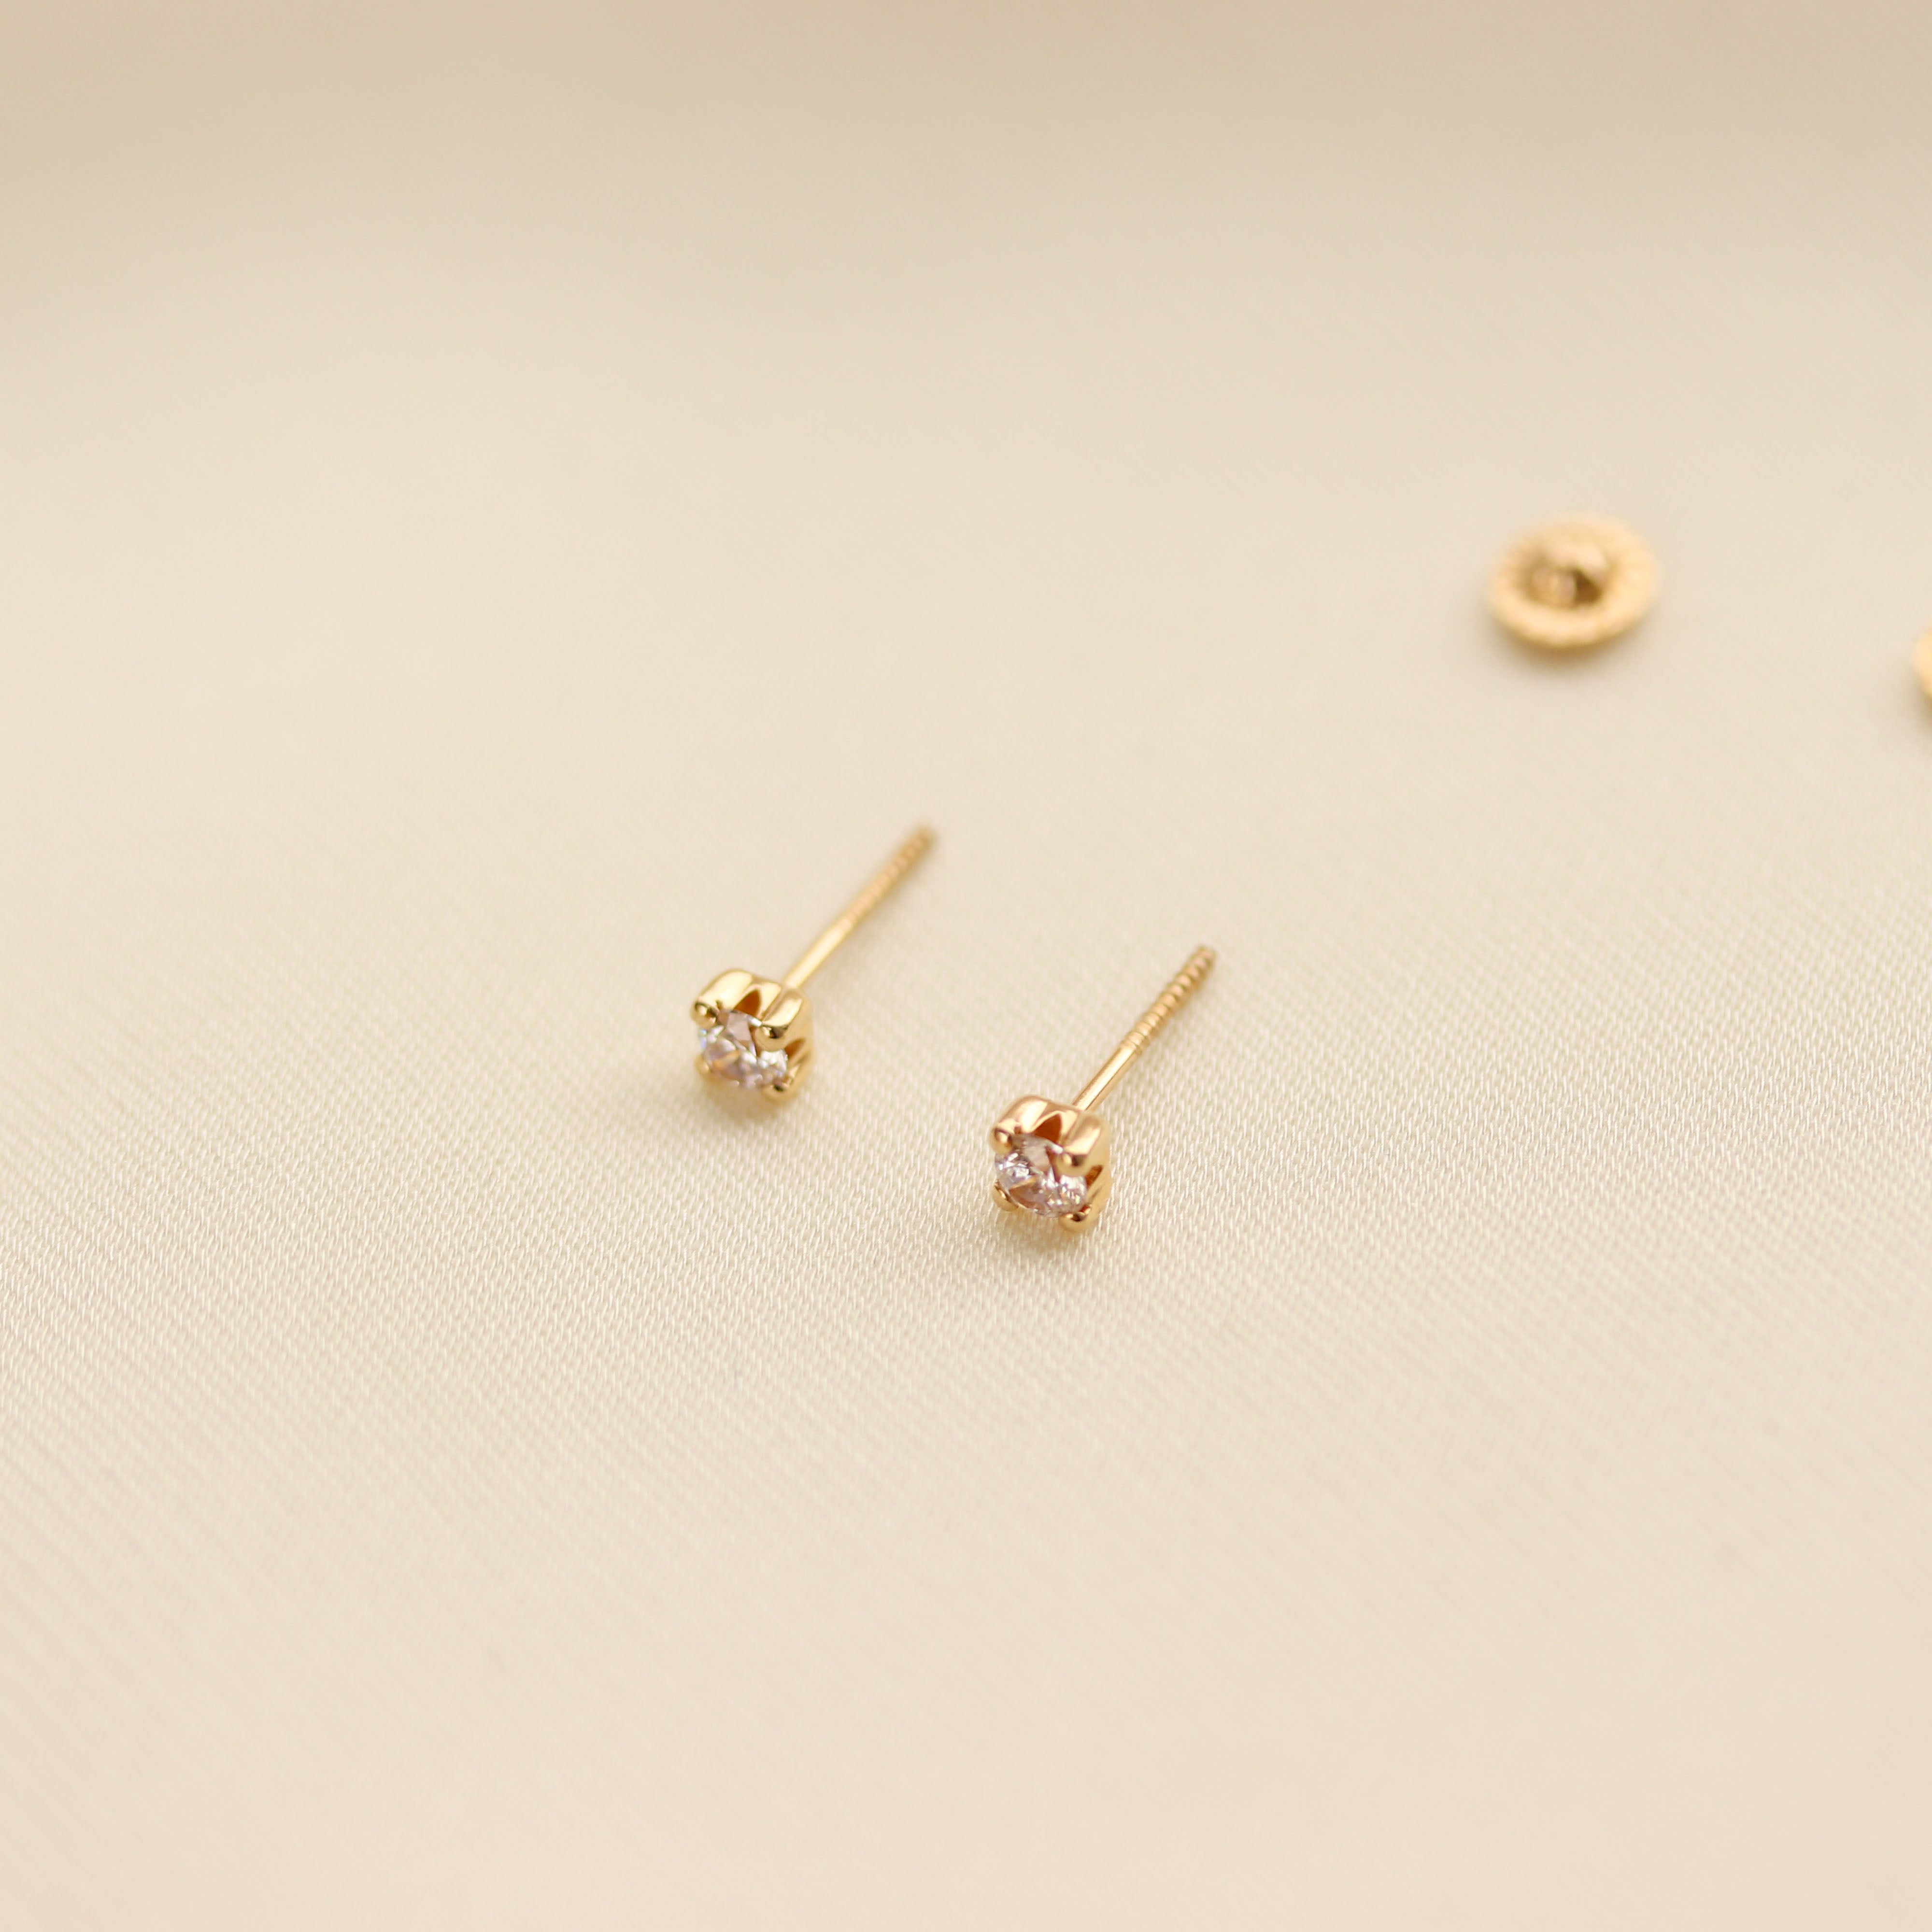 Daily Wear Small Gold Stud Earrings in Thodu Design | Jewelsmart